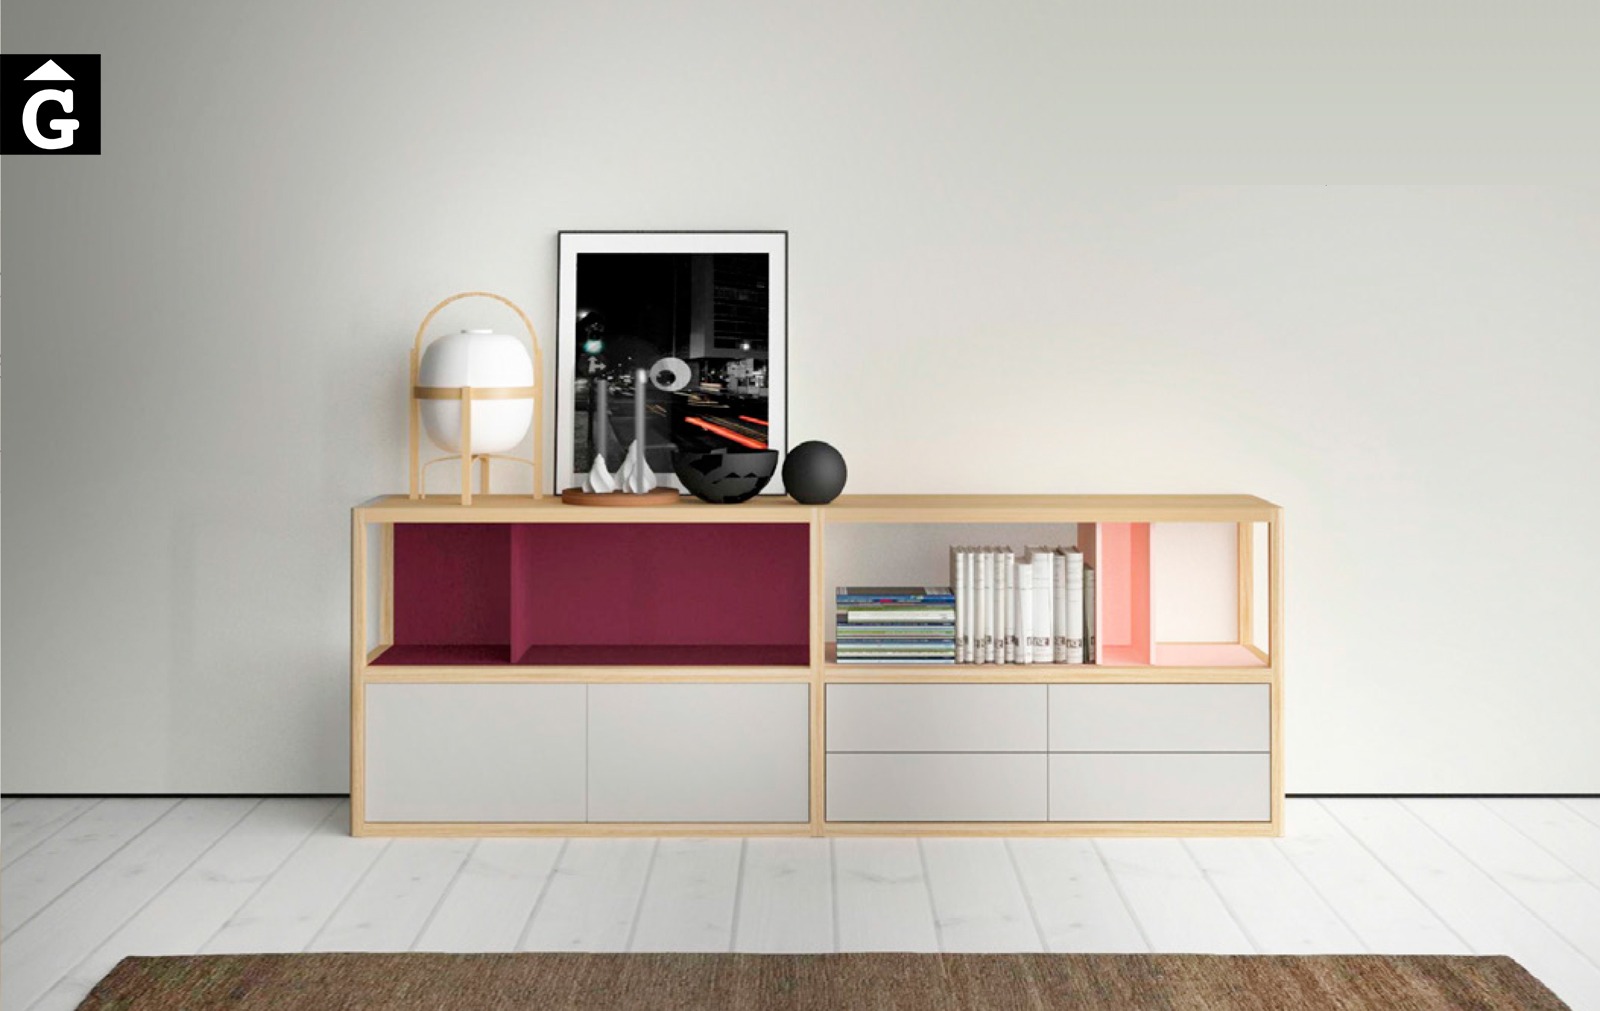 Kai bufet Treku by mobles Gifreu Idees per la llar moble de qualitat-Recovered